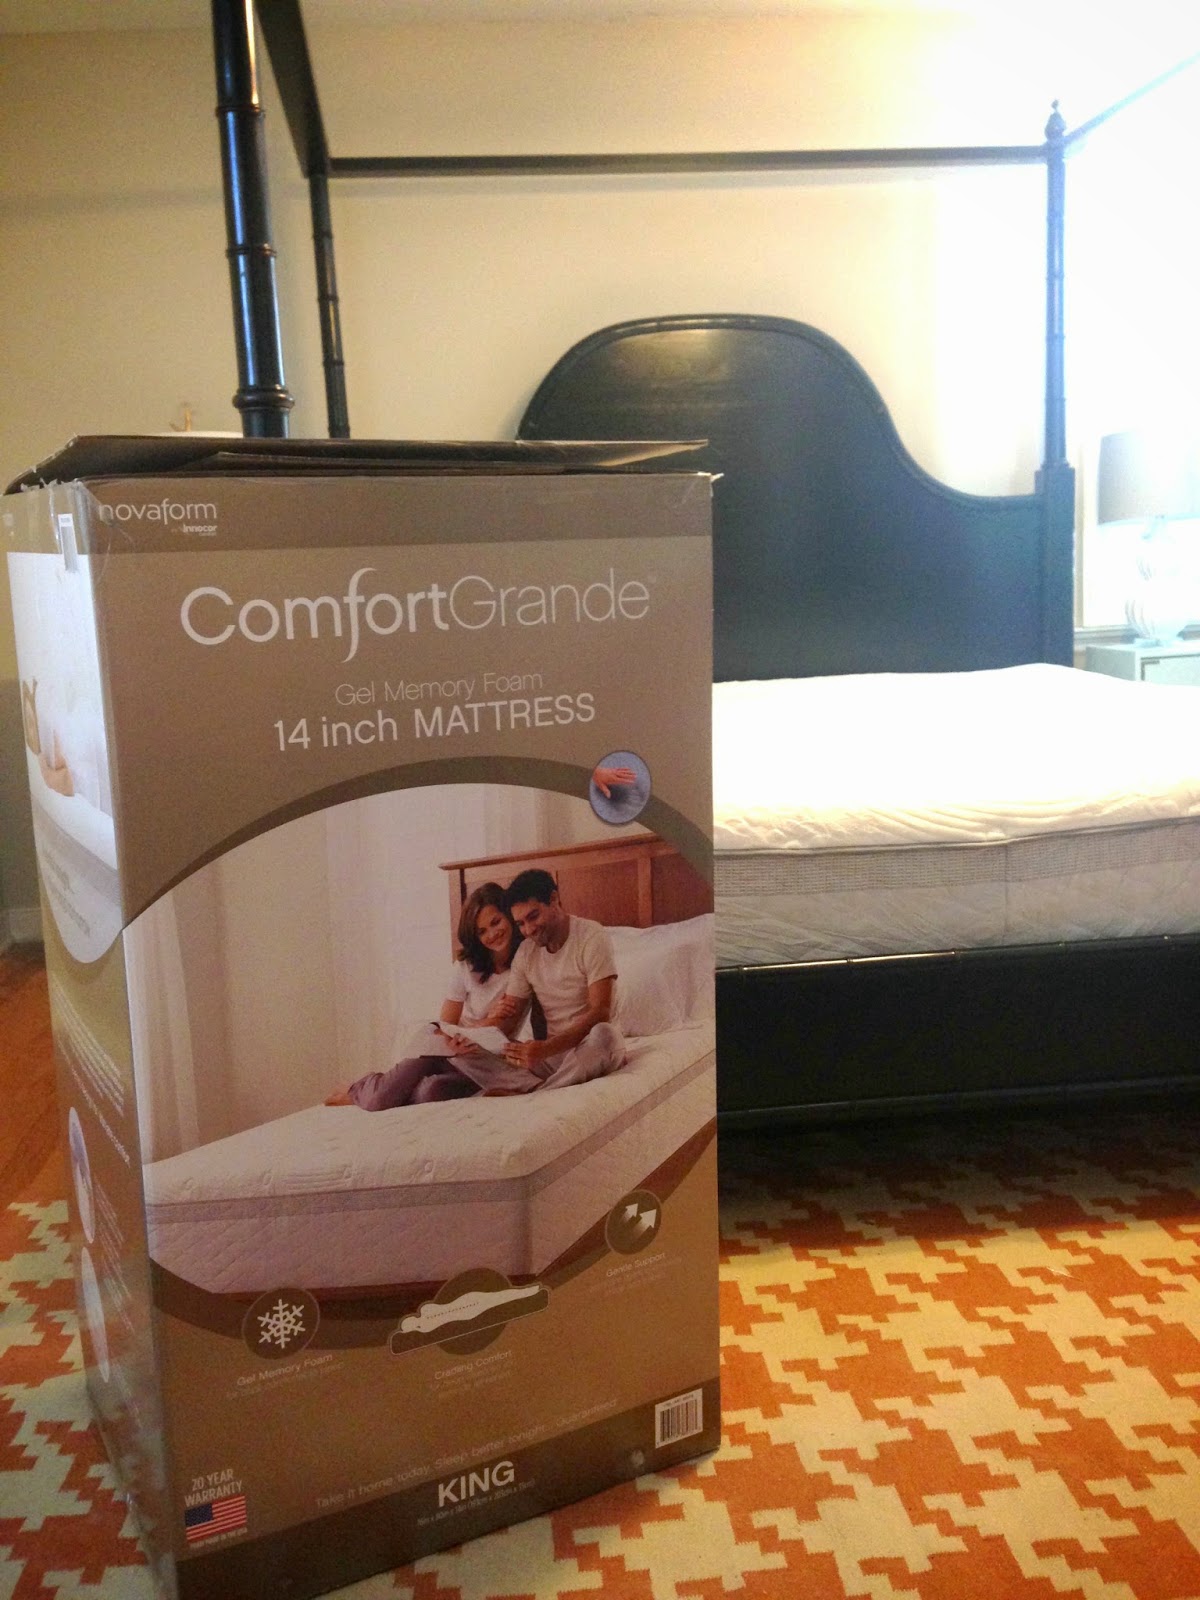 We Bought a Bed in a Box: Costco Novaform Foam Mattress   Erinn 